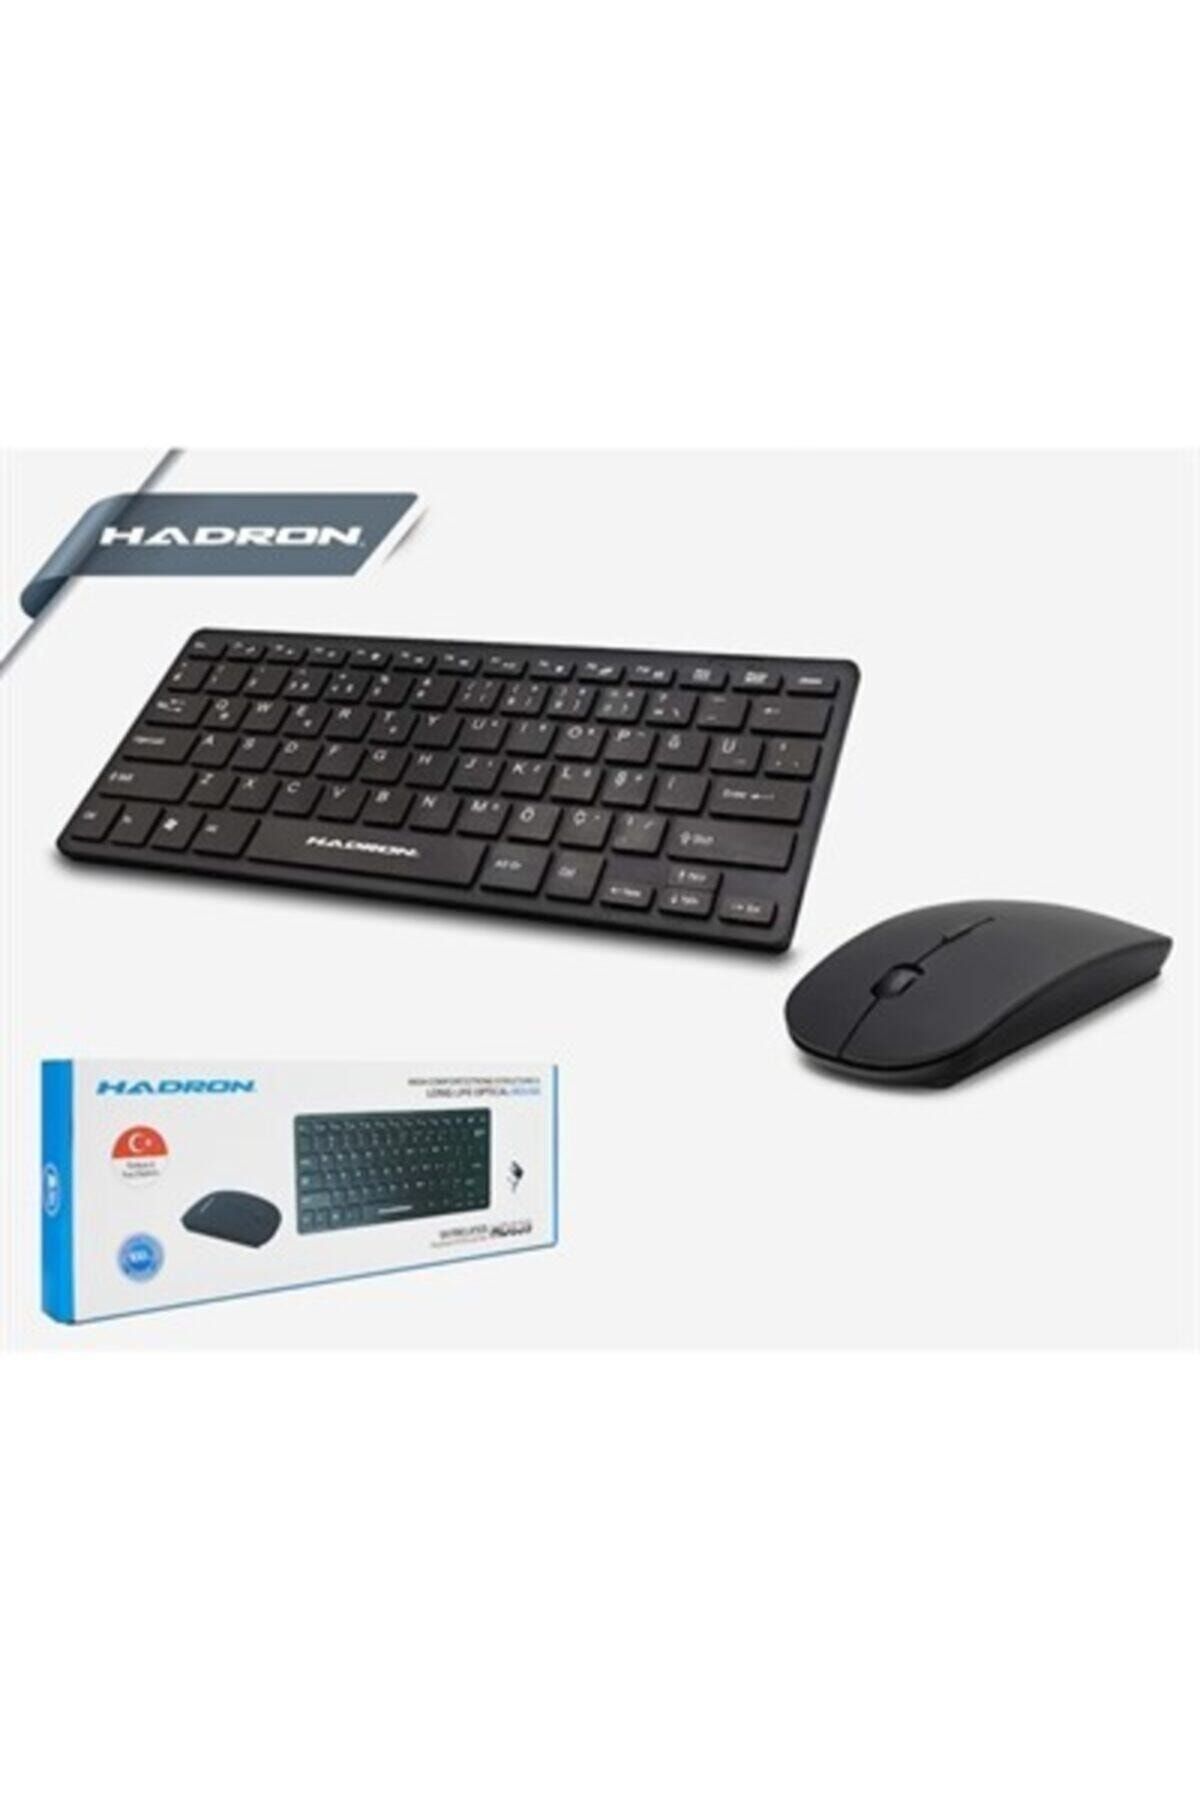 HADRON Kablosuz Q Klavye Mouse Set Hd-839(siyah Klavye)